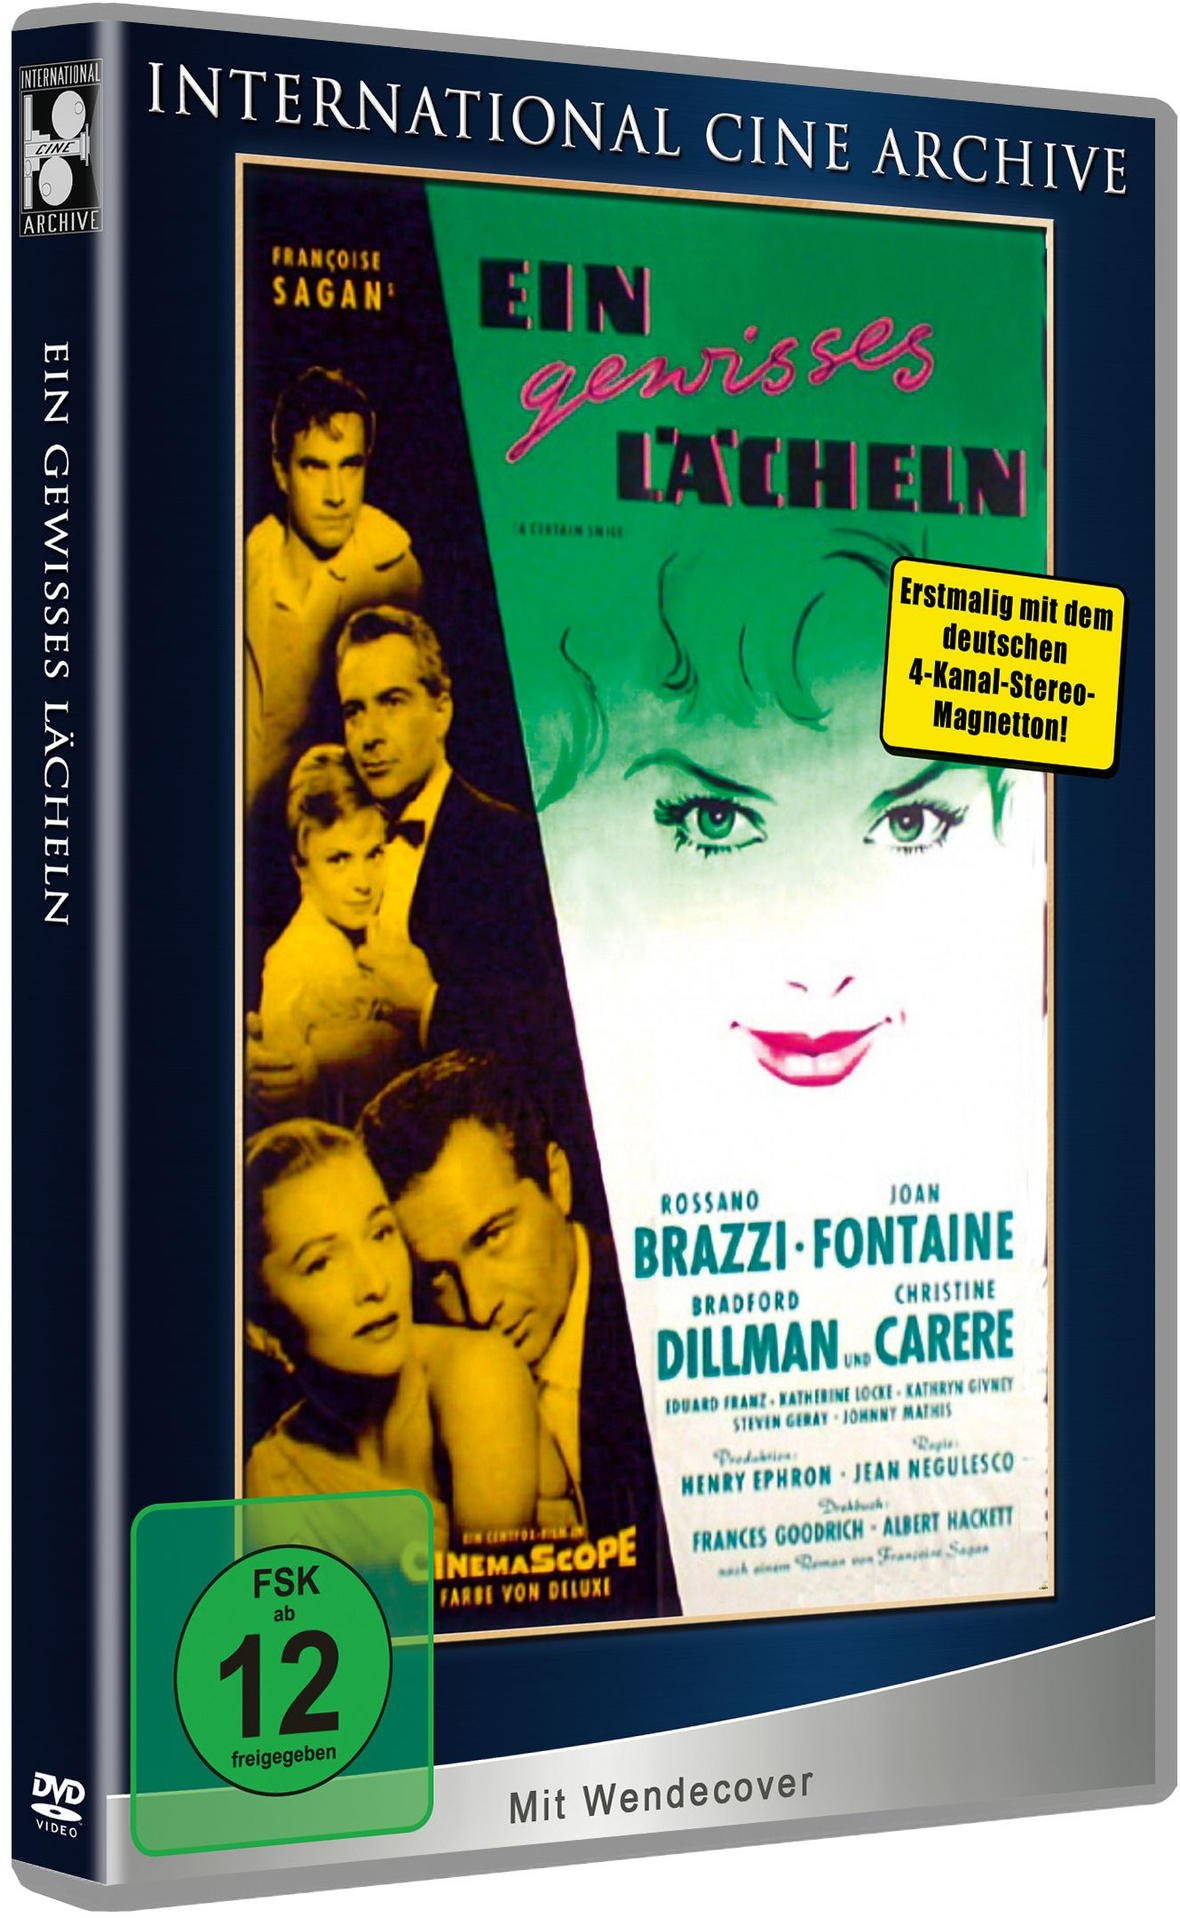 Edition Ein smile) A - - Archive Limited - dem International certain Lächeln Cine mit deutschen Erstmalig 1959 # 007 4-Kanal-Stereo-Magnetton (USA - gewisses DVD